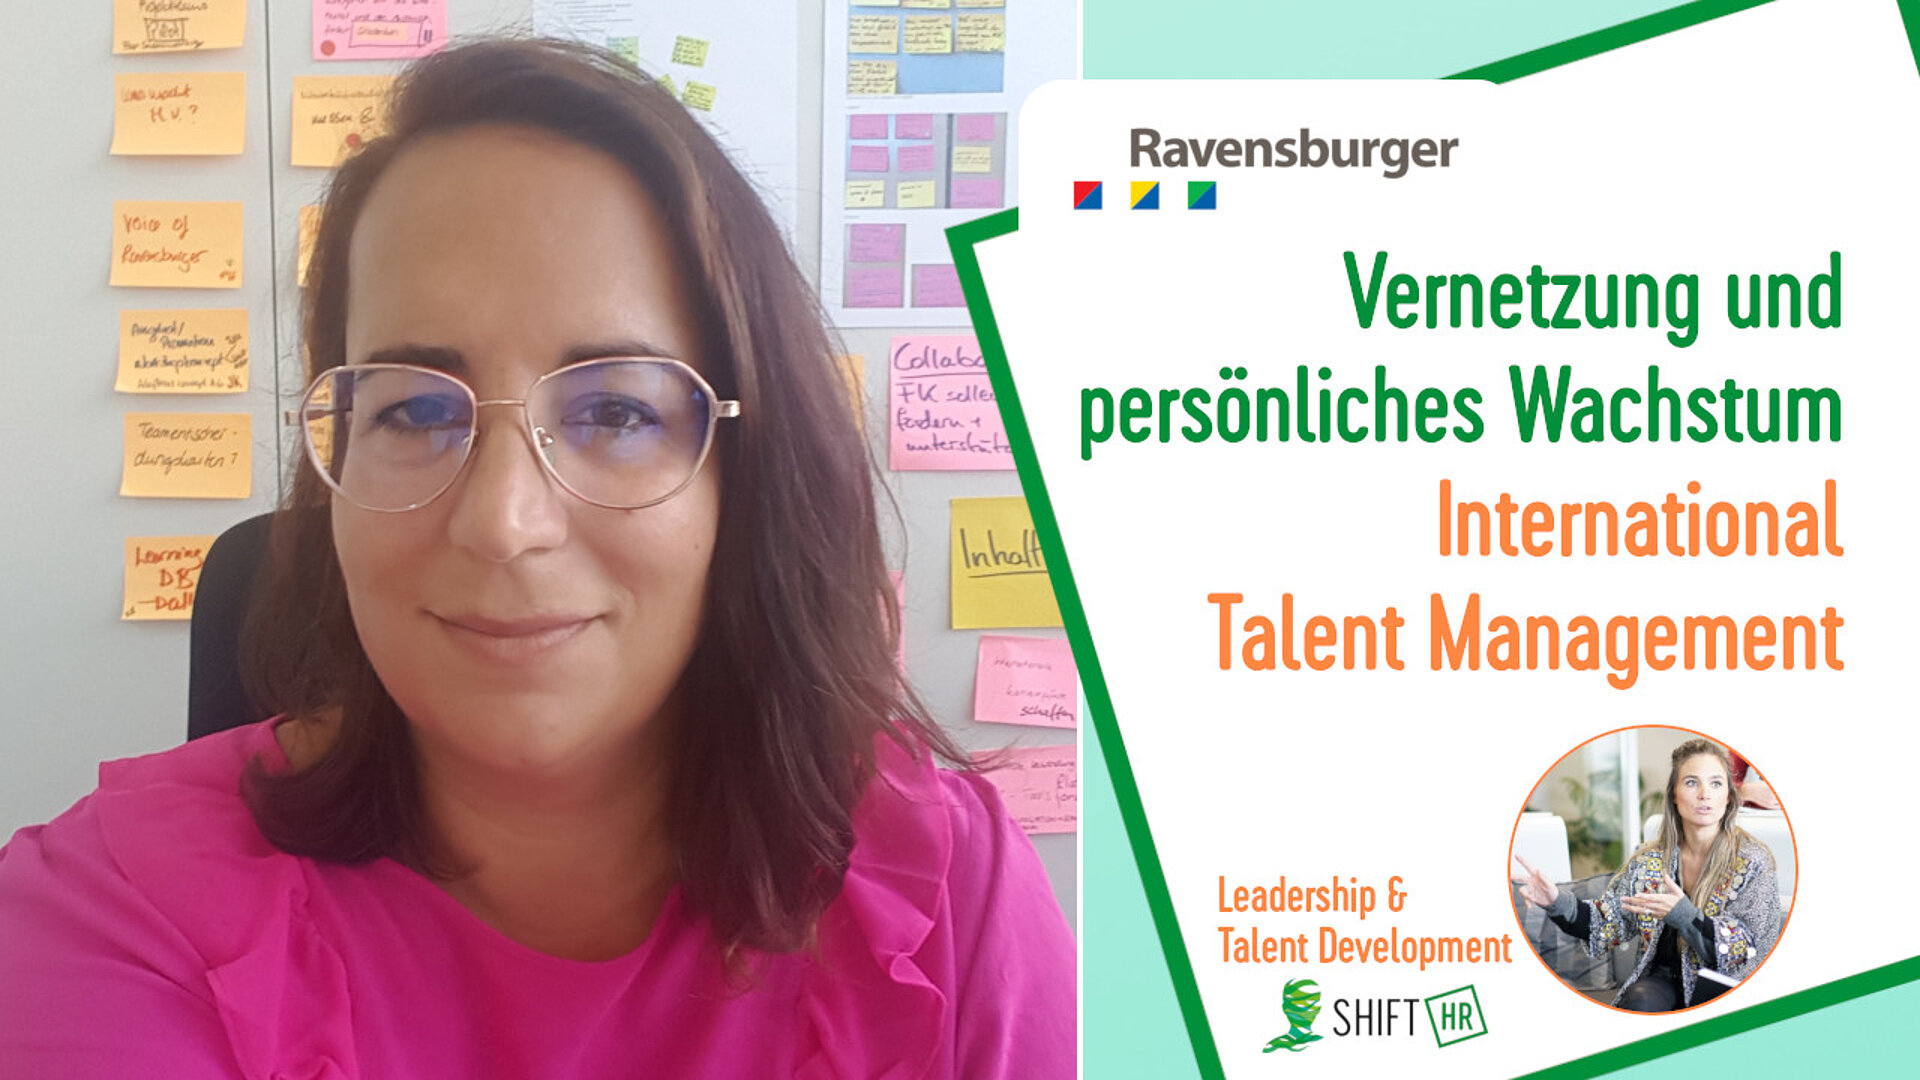 Vernetzung und persönliches Wachstum bei Ravensburger- Wie International Talent Management Gemeinschaft und Erfüllung fördert